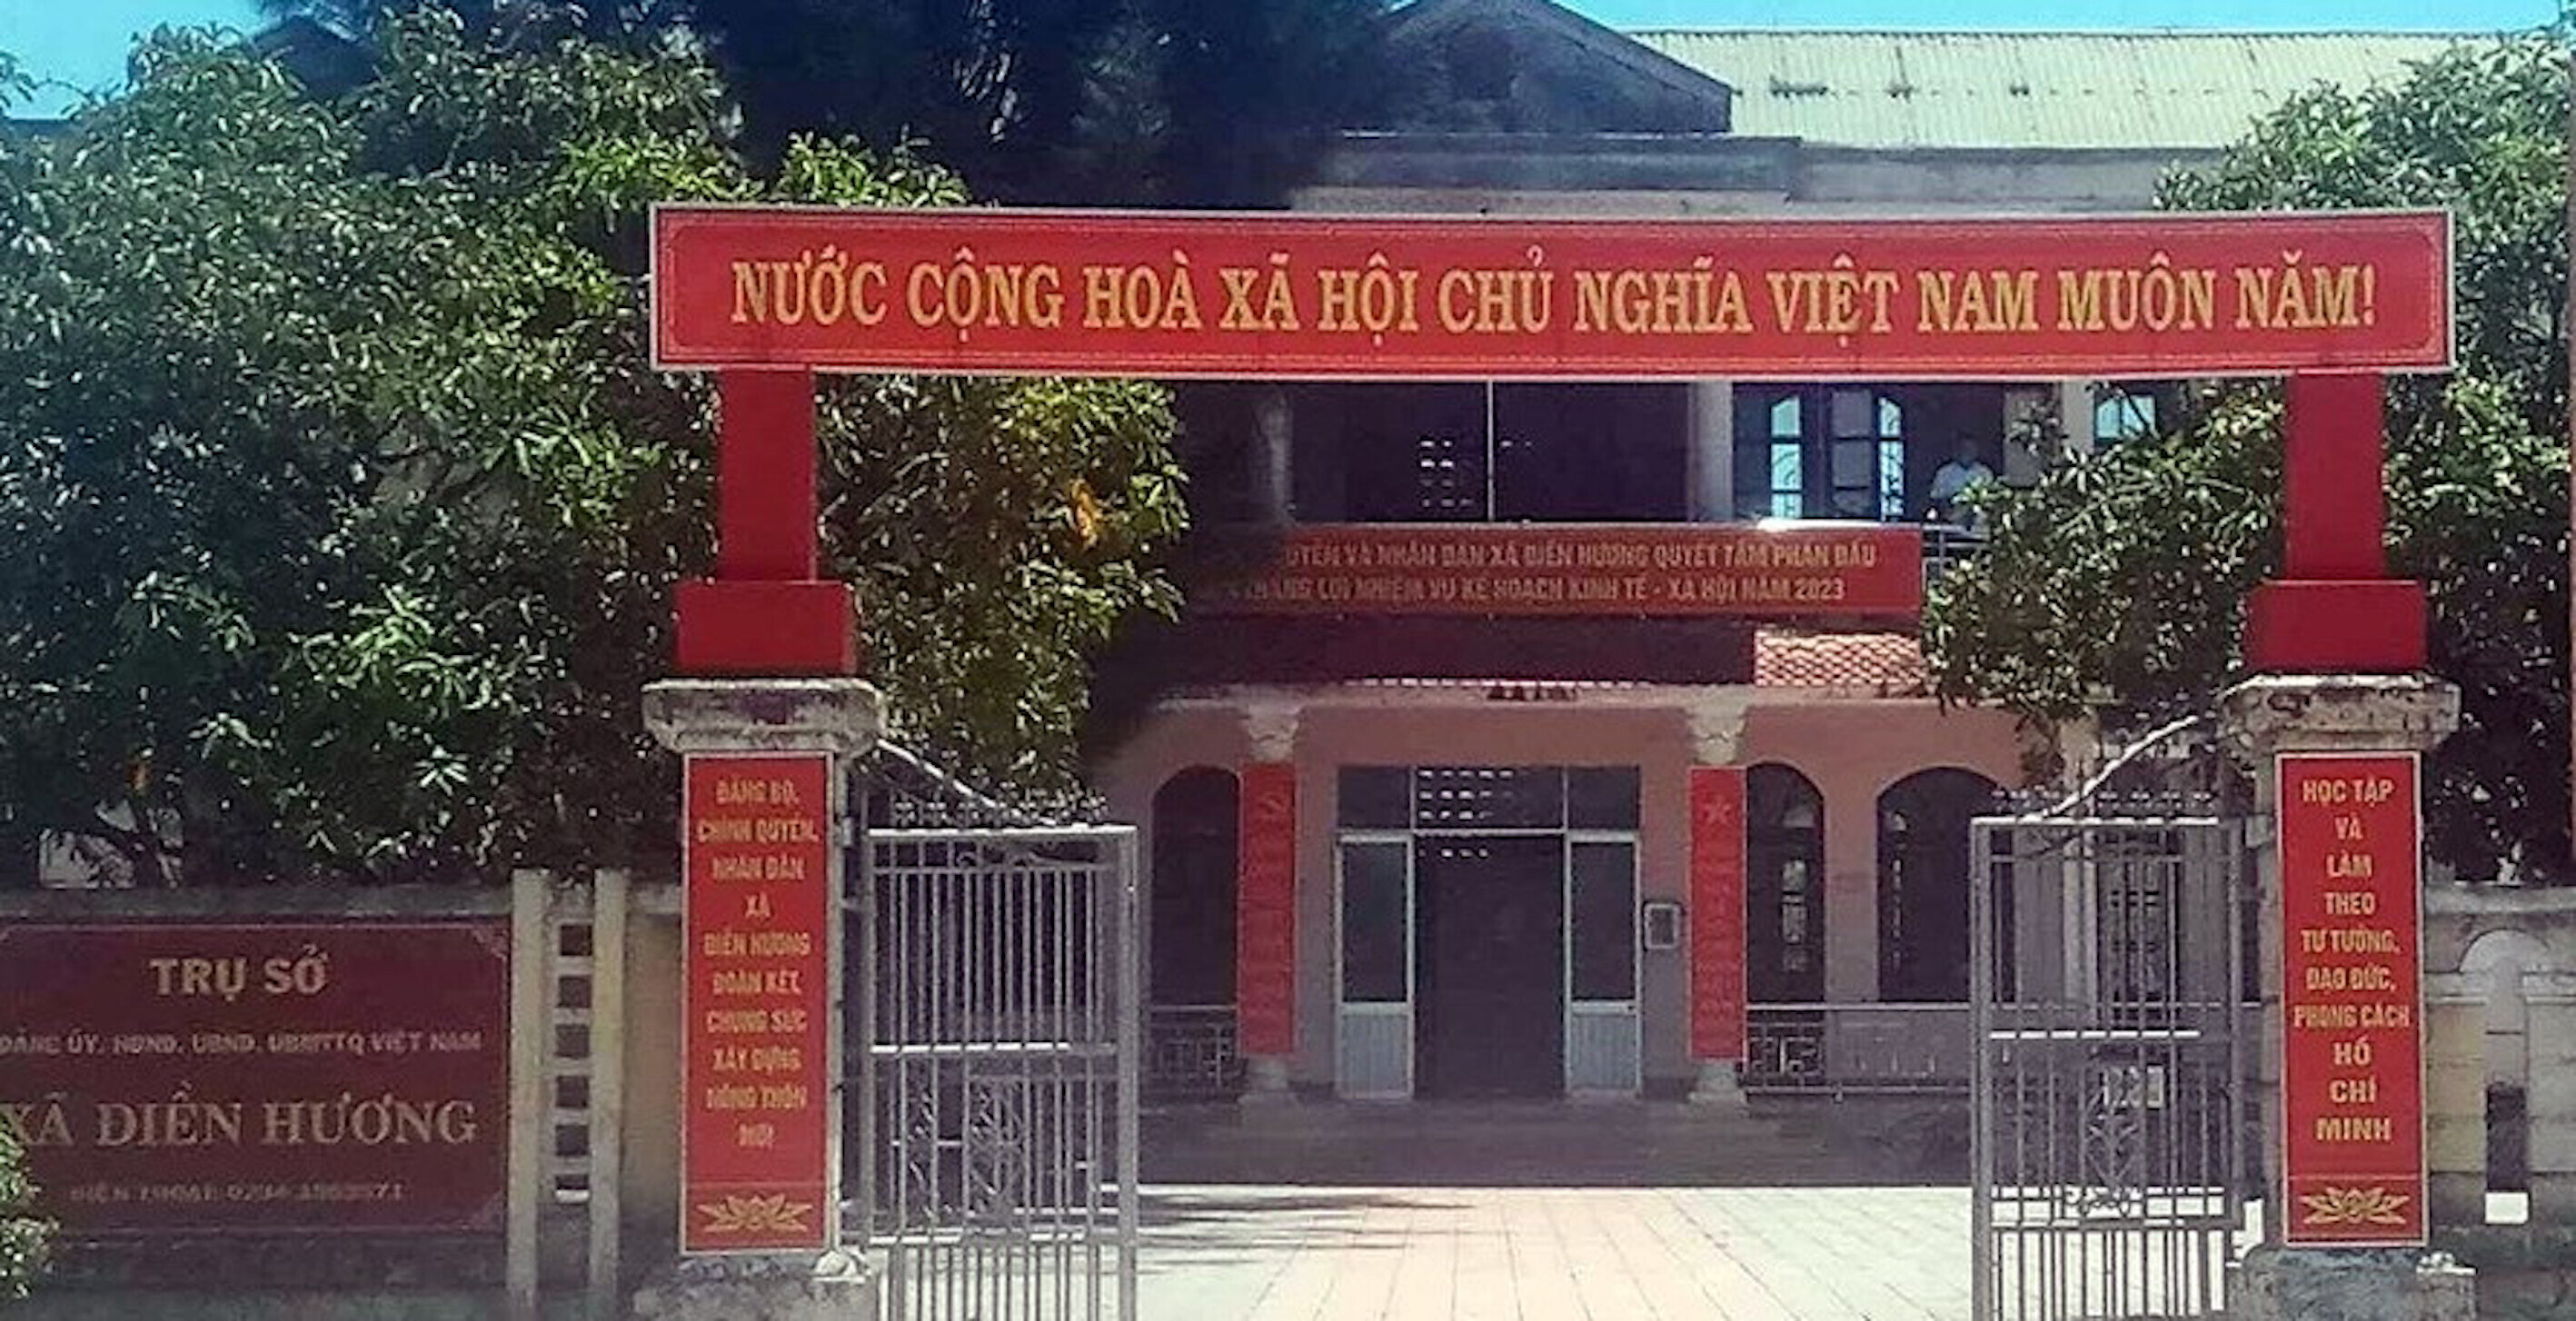 Trụ sở UBND xã Điền Hương (huyện Phong Điền, tỉnh Thừa Thiên - Huế)